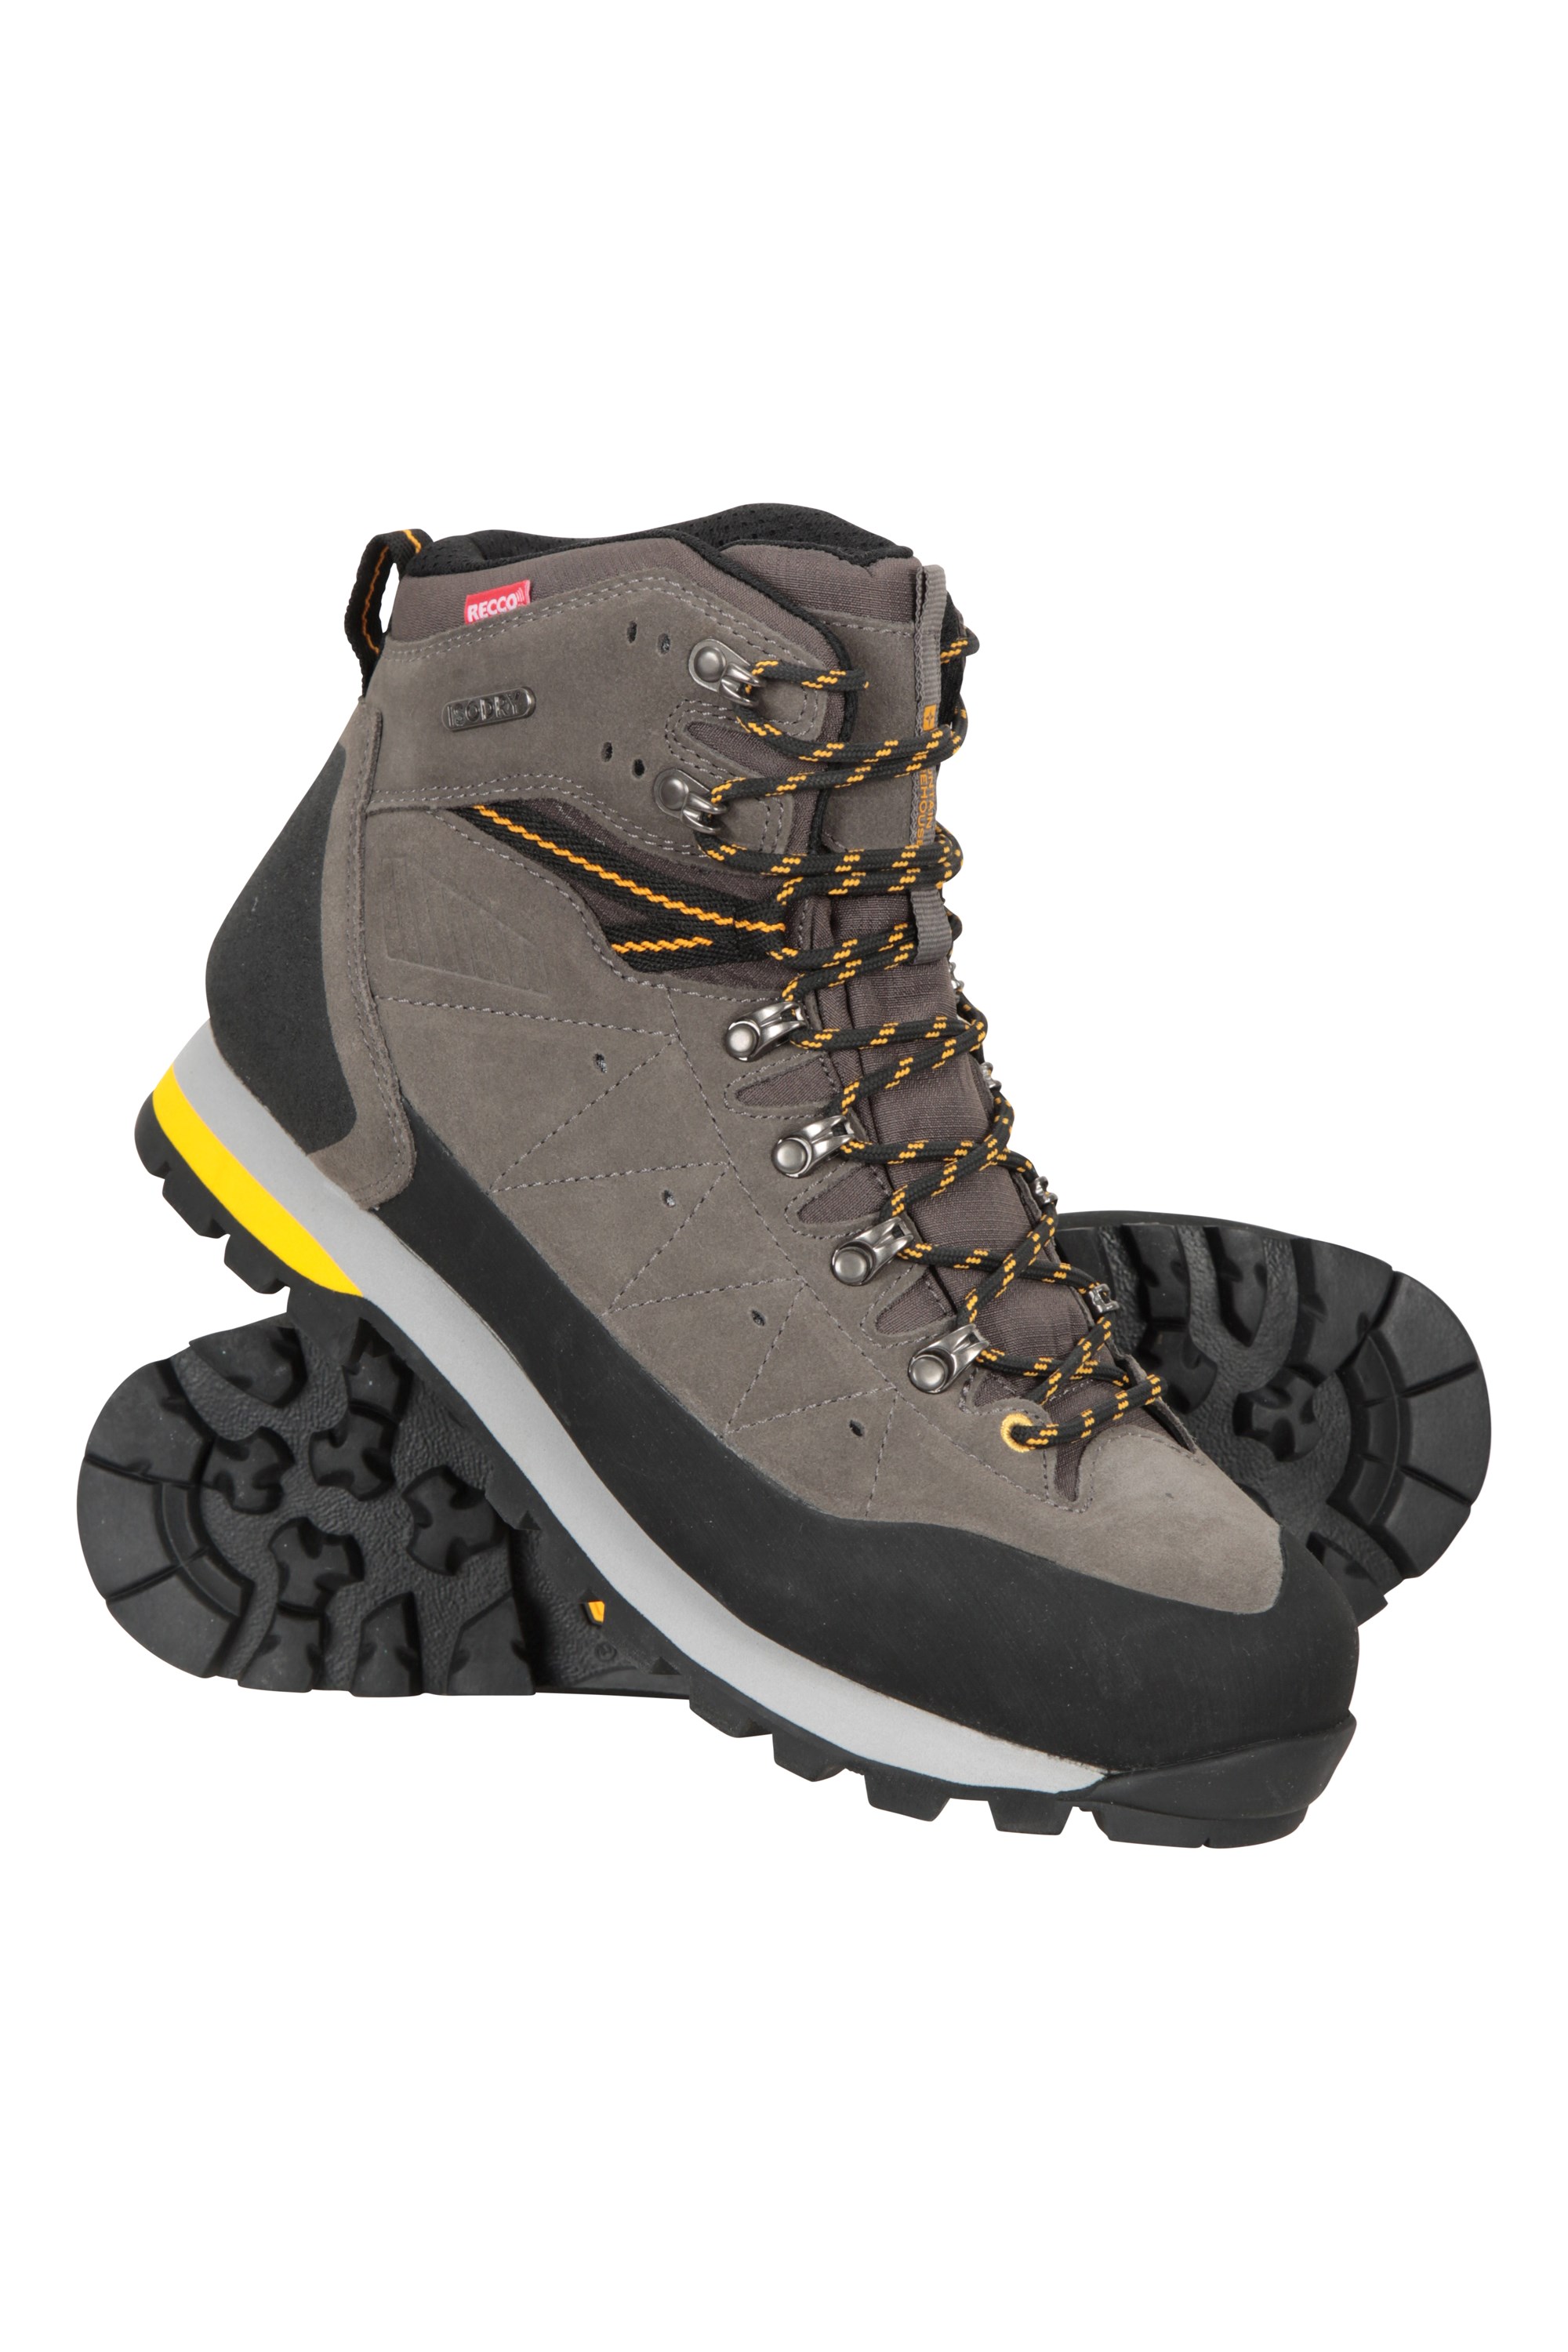 Ultra Peak Mens Waterproof Boots